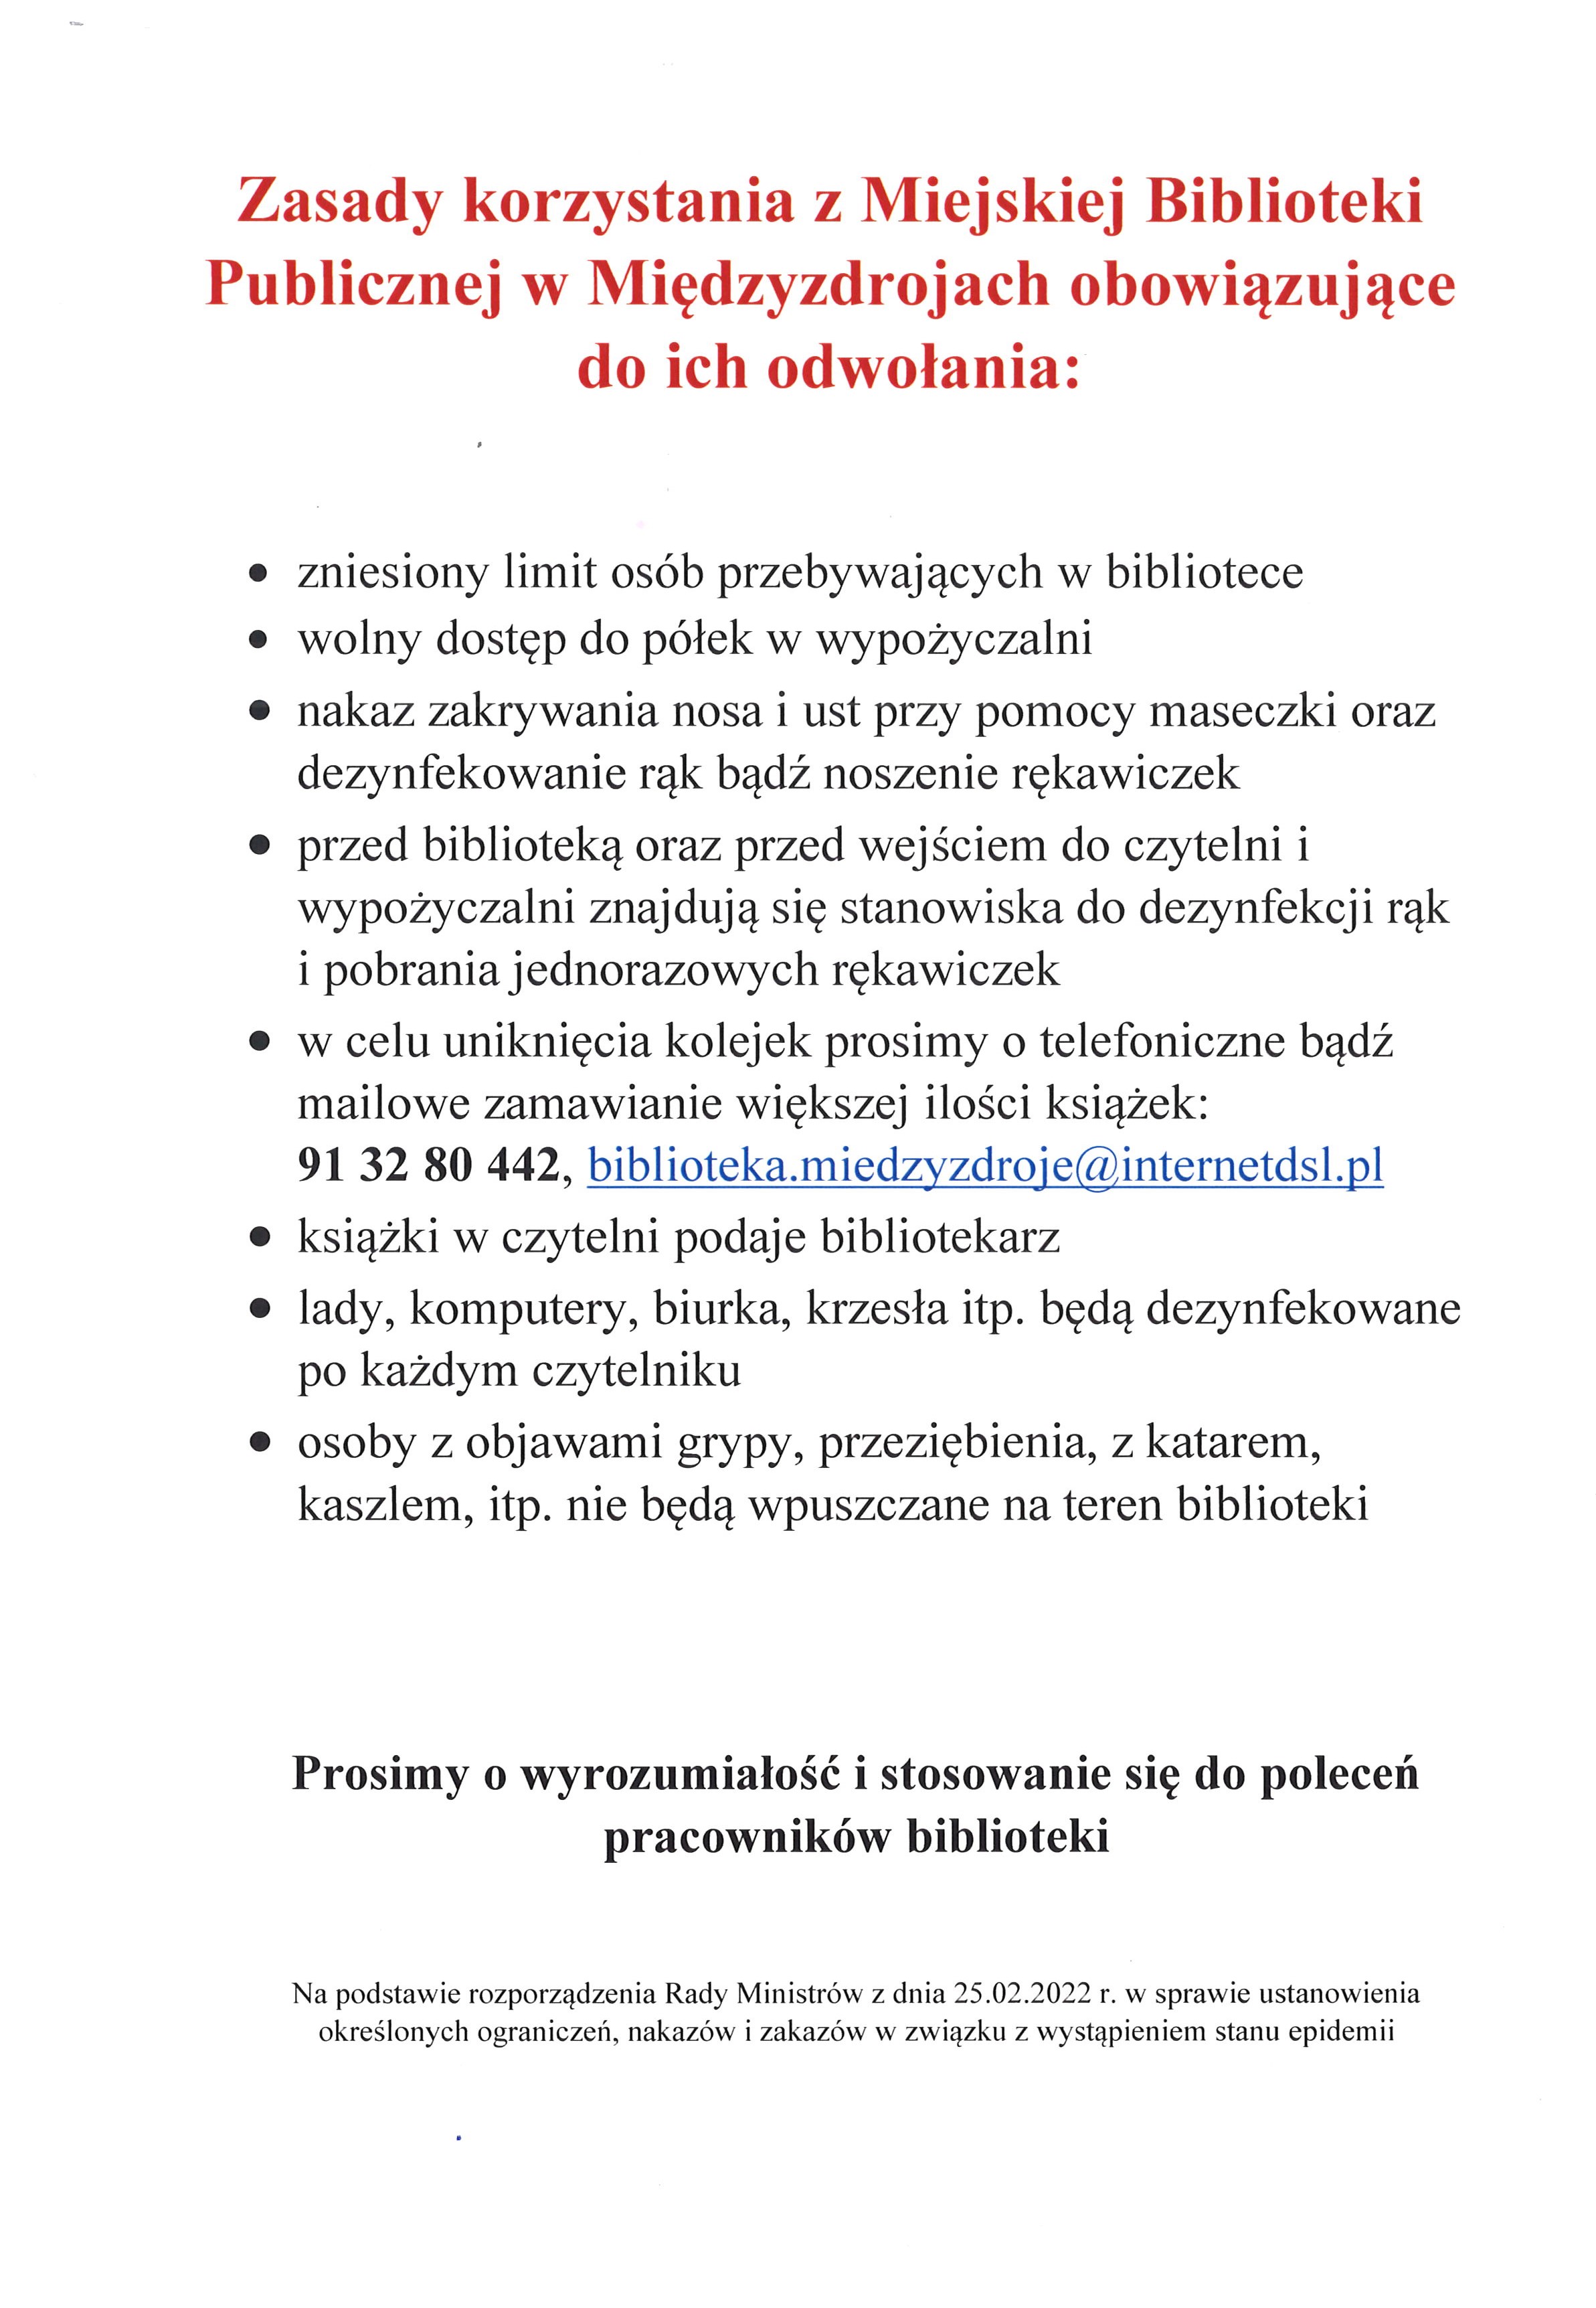 Zasady korzystania z Miejskiej Biblioteki Publicznej w Międzyzdrojach 14.03.2022 r.